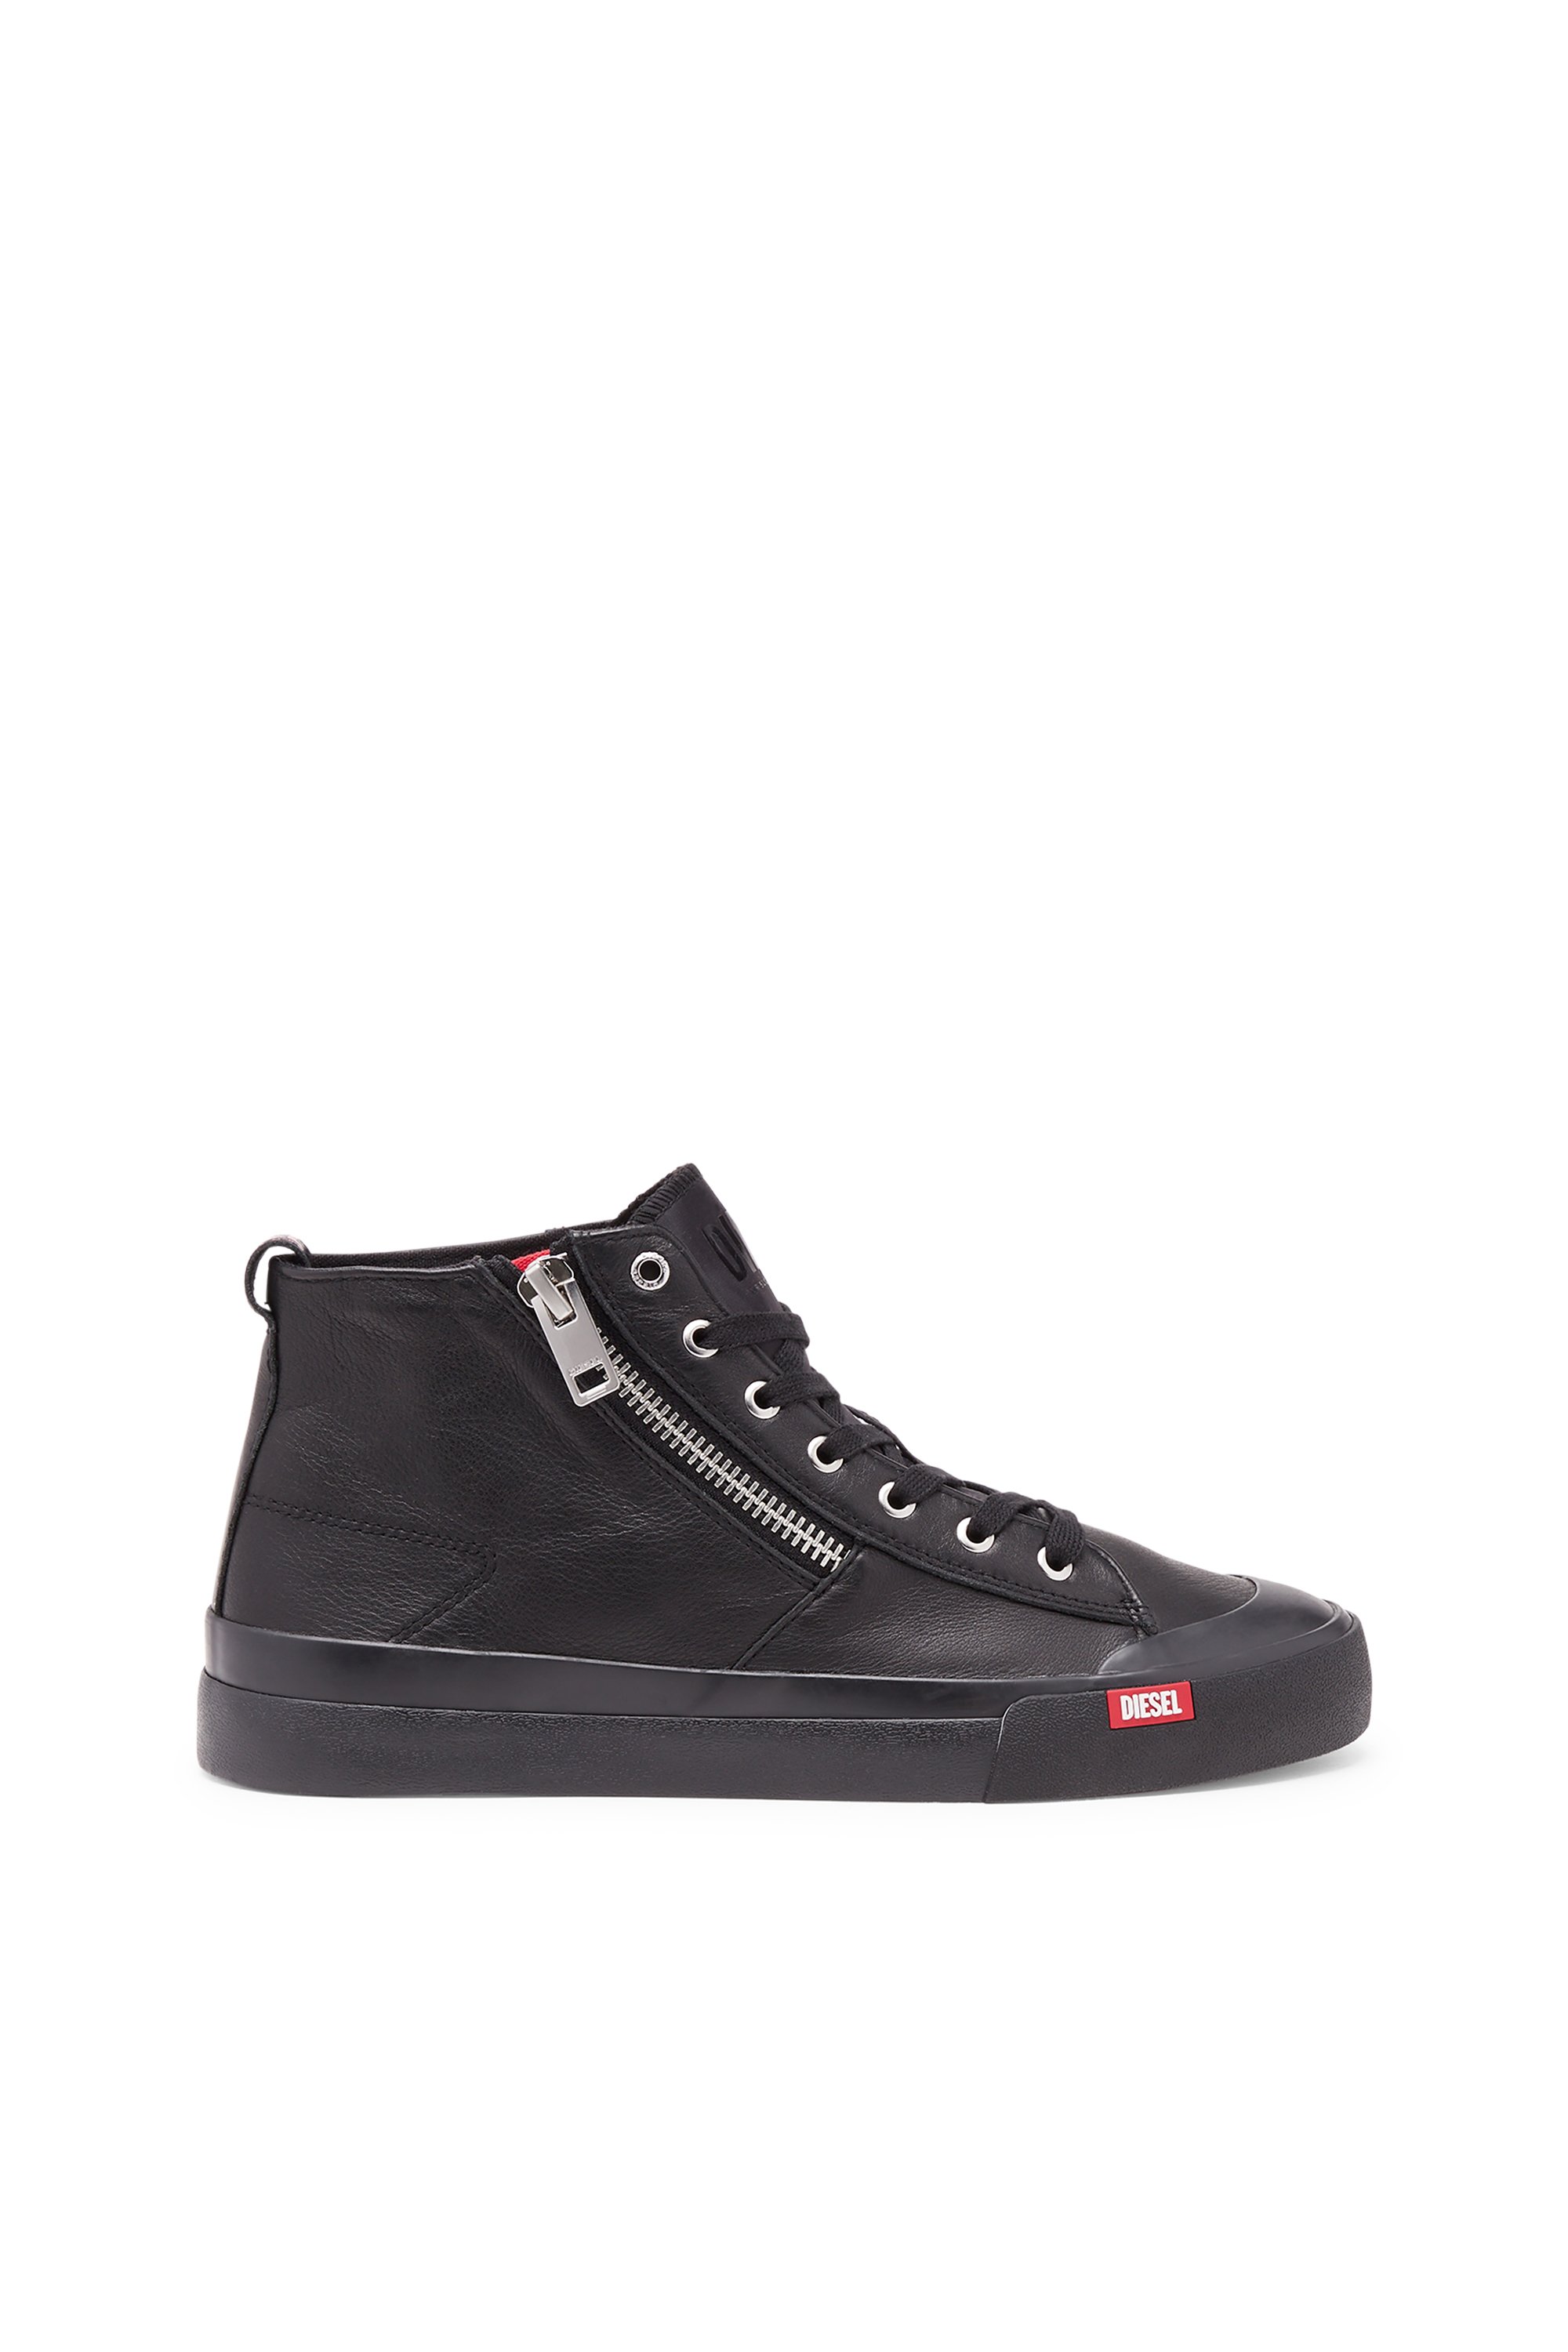 Diesel - S-Athos Zip - High-top sneakers in premium leather - Sneakers - Man - Black